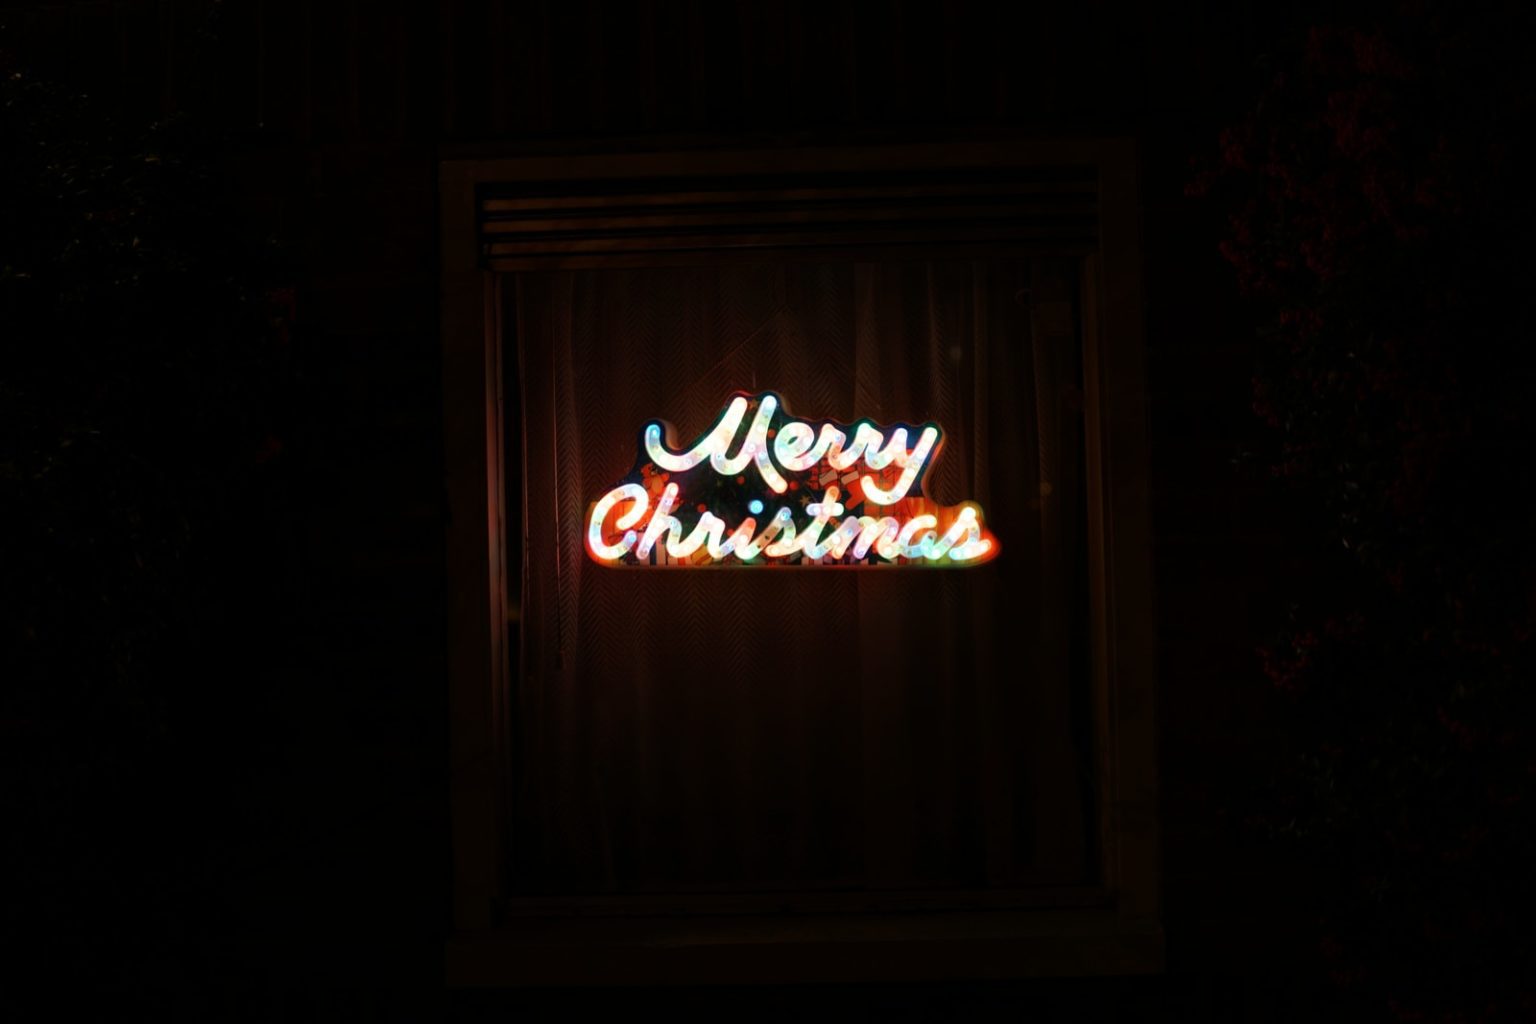 Merry Christmas LED signage